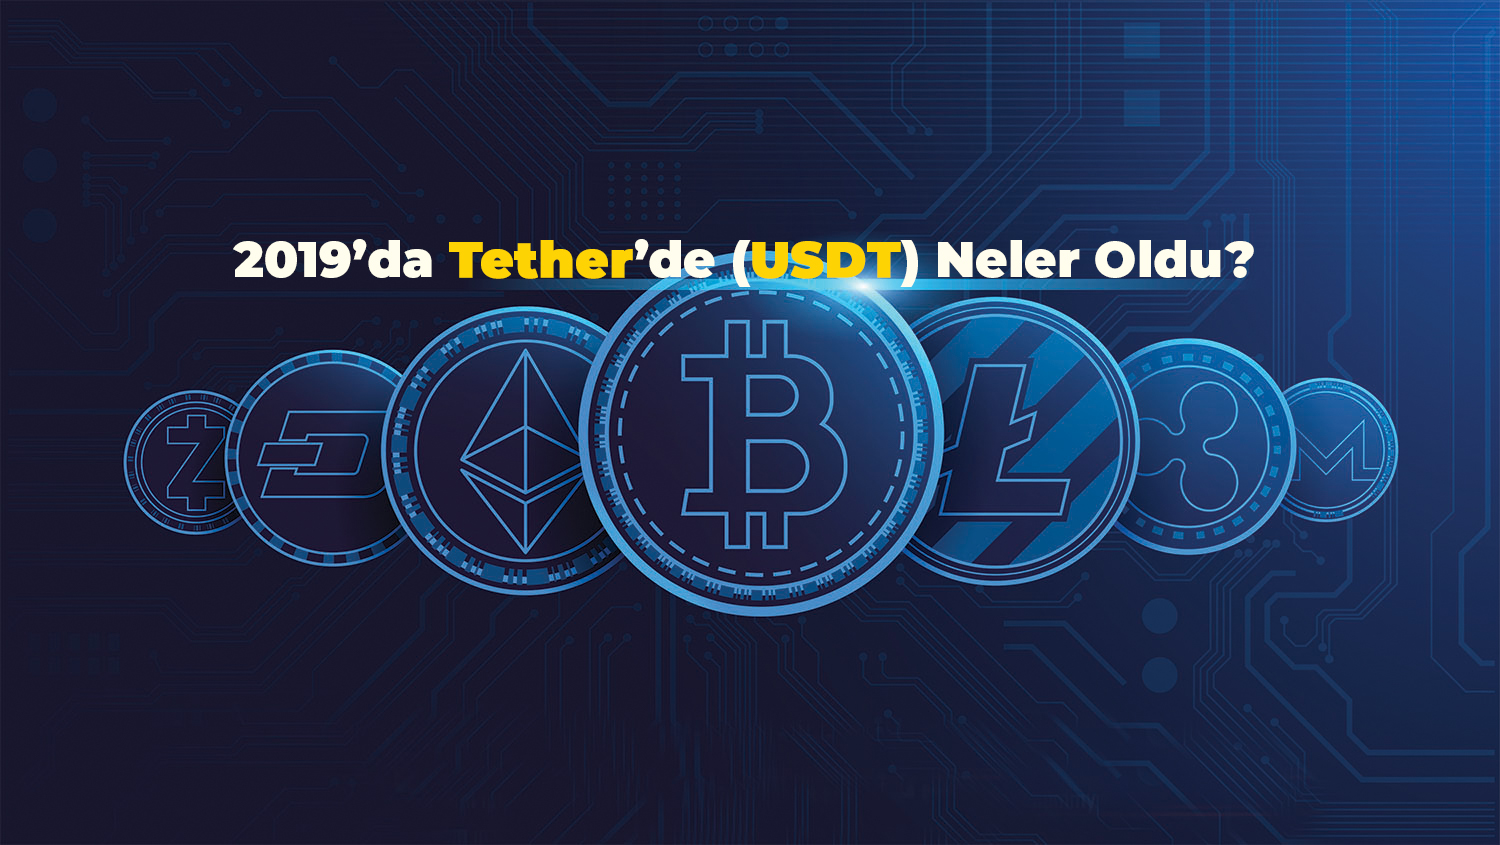 2019'da Tether'de (USDT) Neler Oldu?